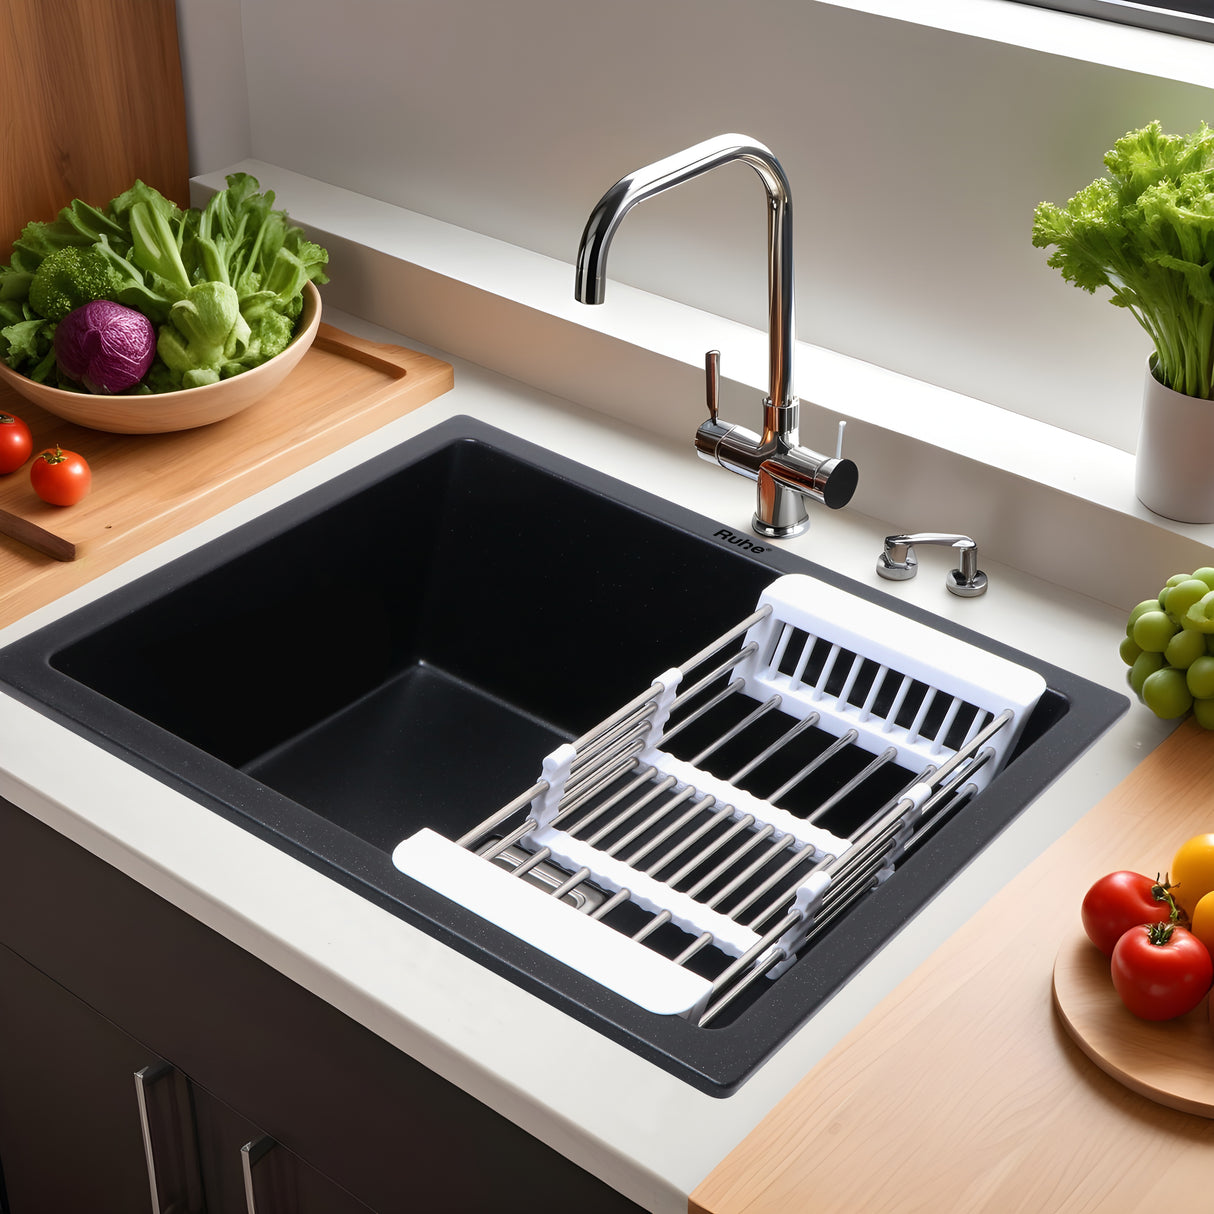 Quartz Single Bowl Kitchen Sink - Matte Black (21 x 18 x 9 inches) - by Ruhe®